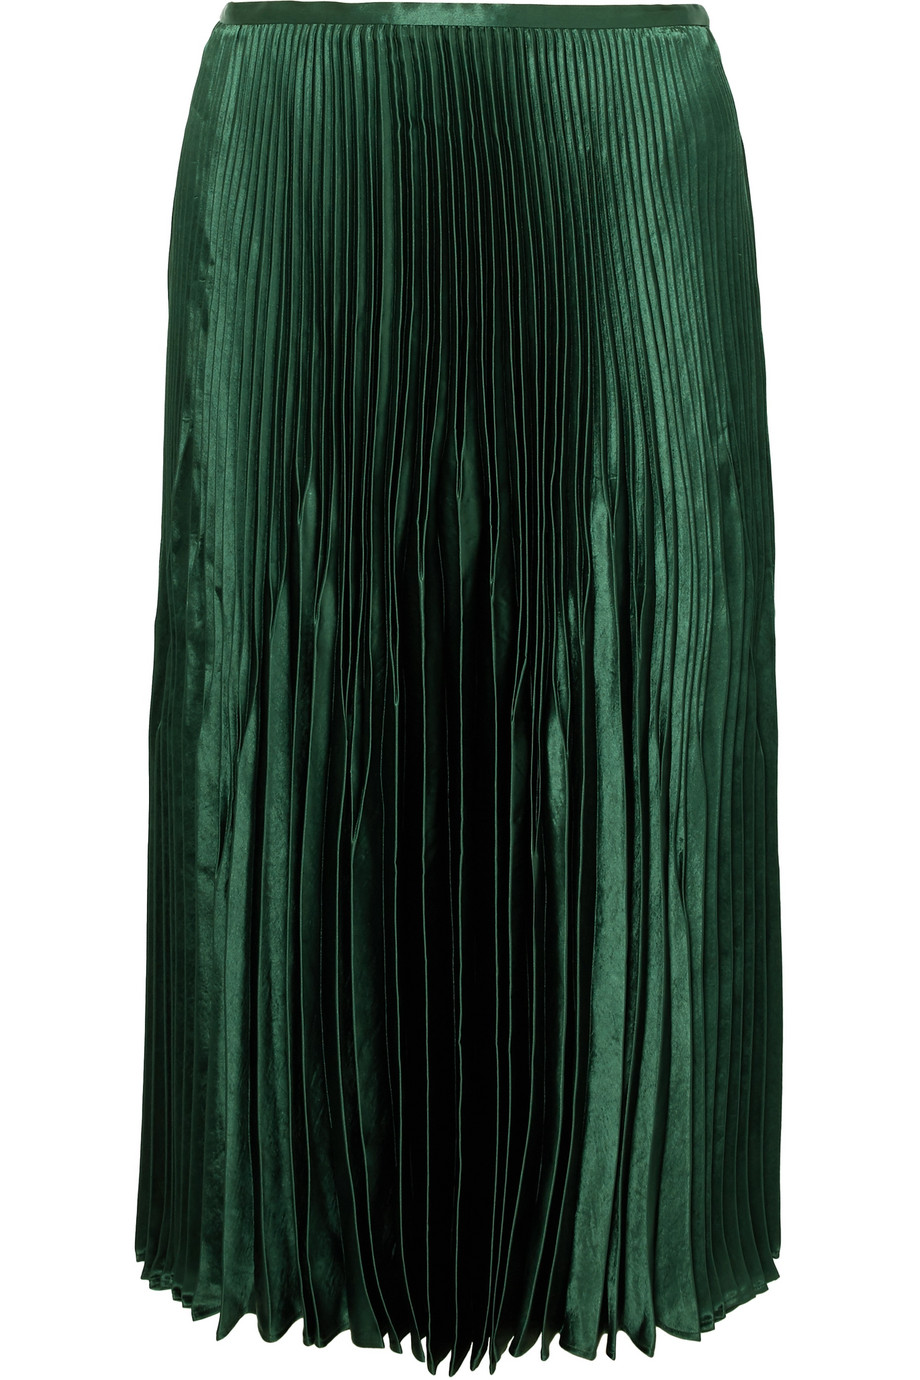 Πράσινη φούστα με μεταλλική όψη-Vince